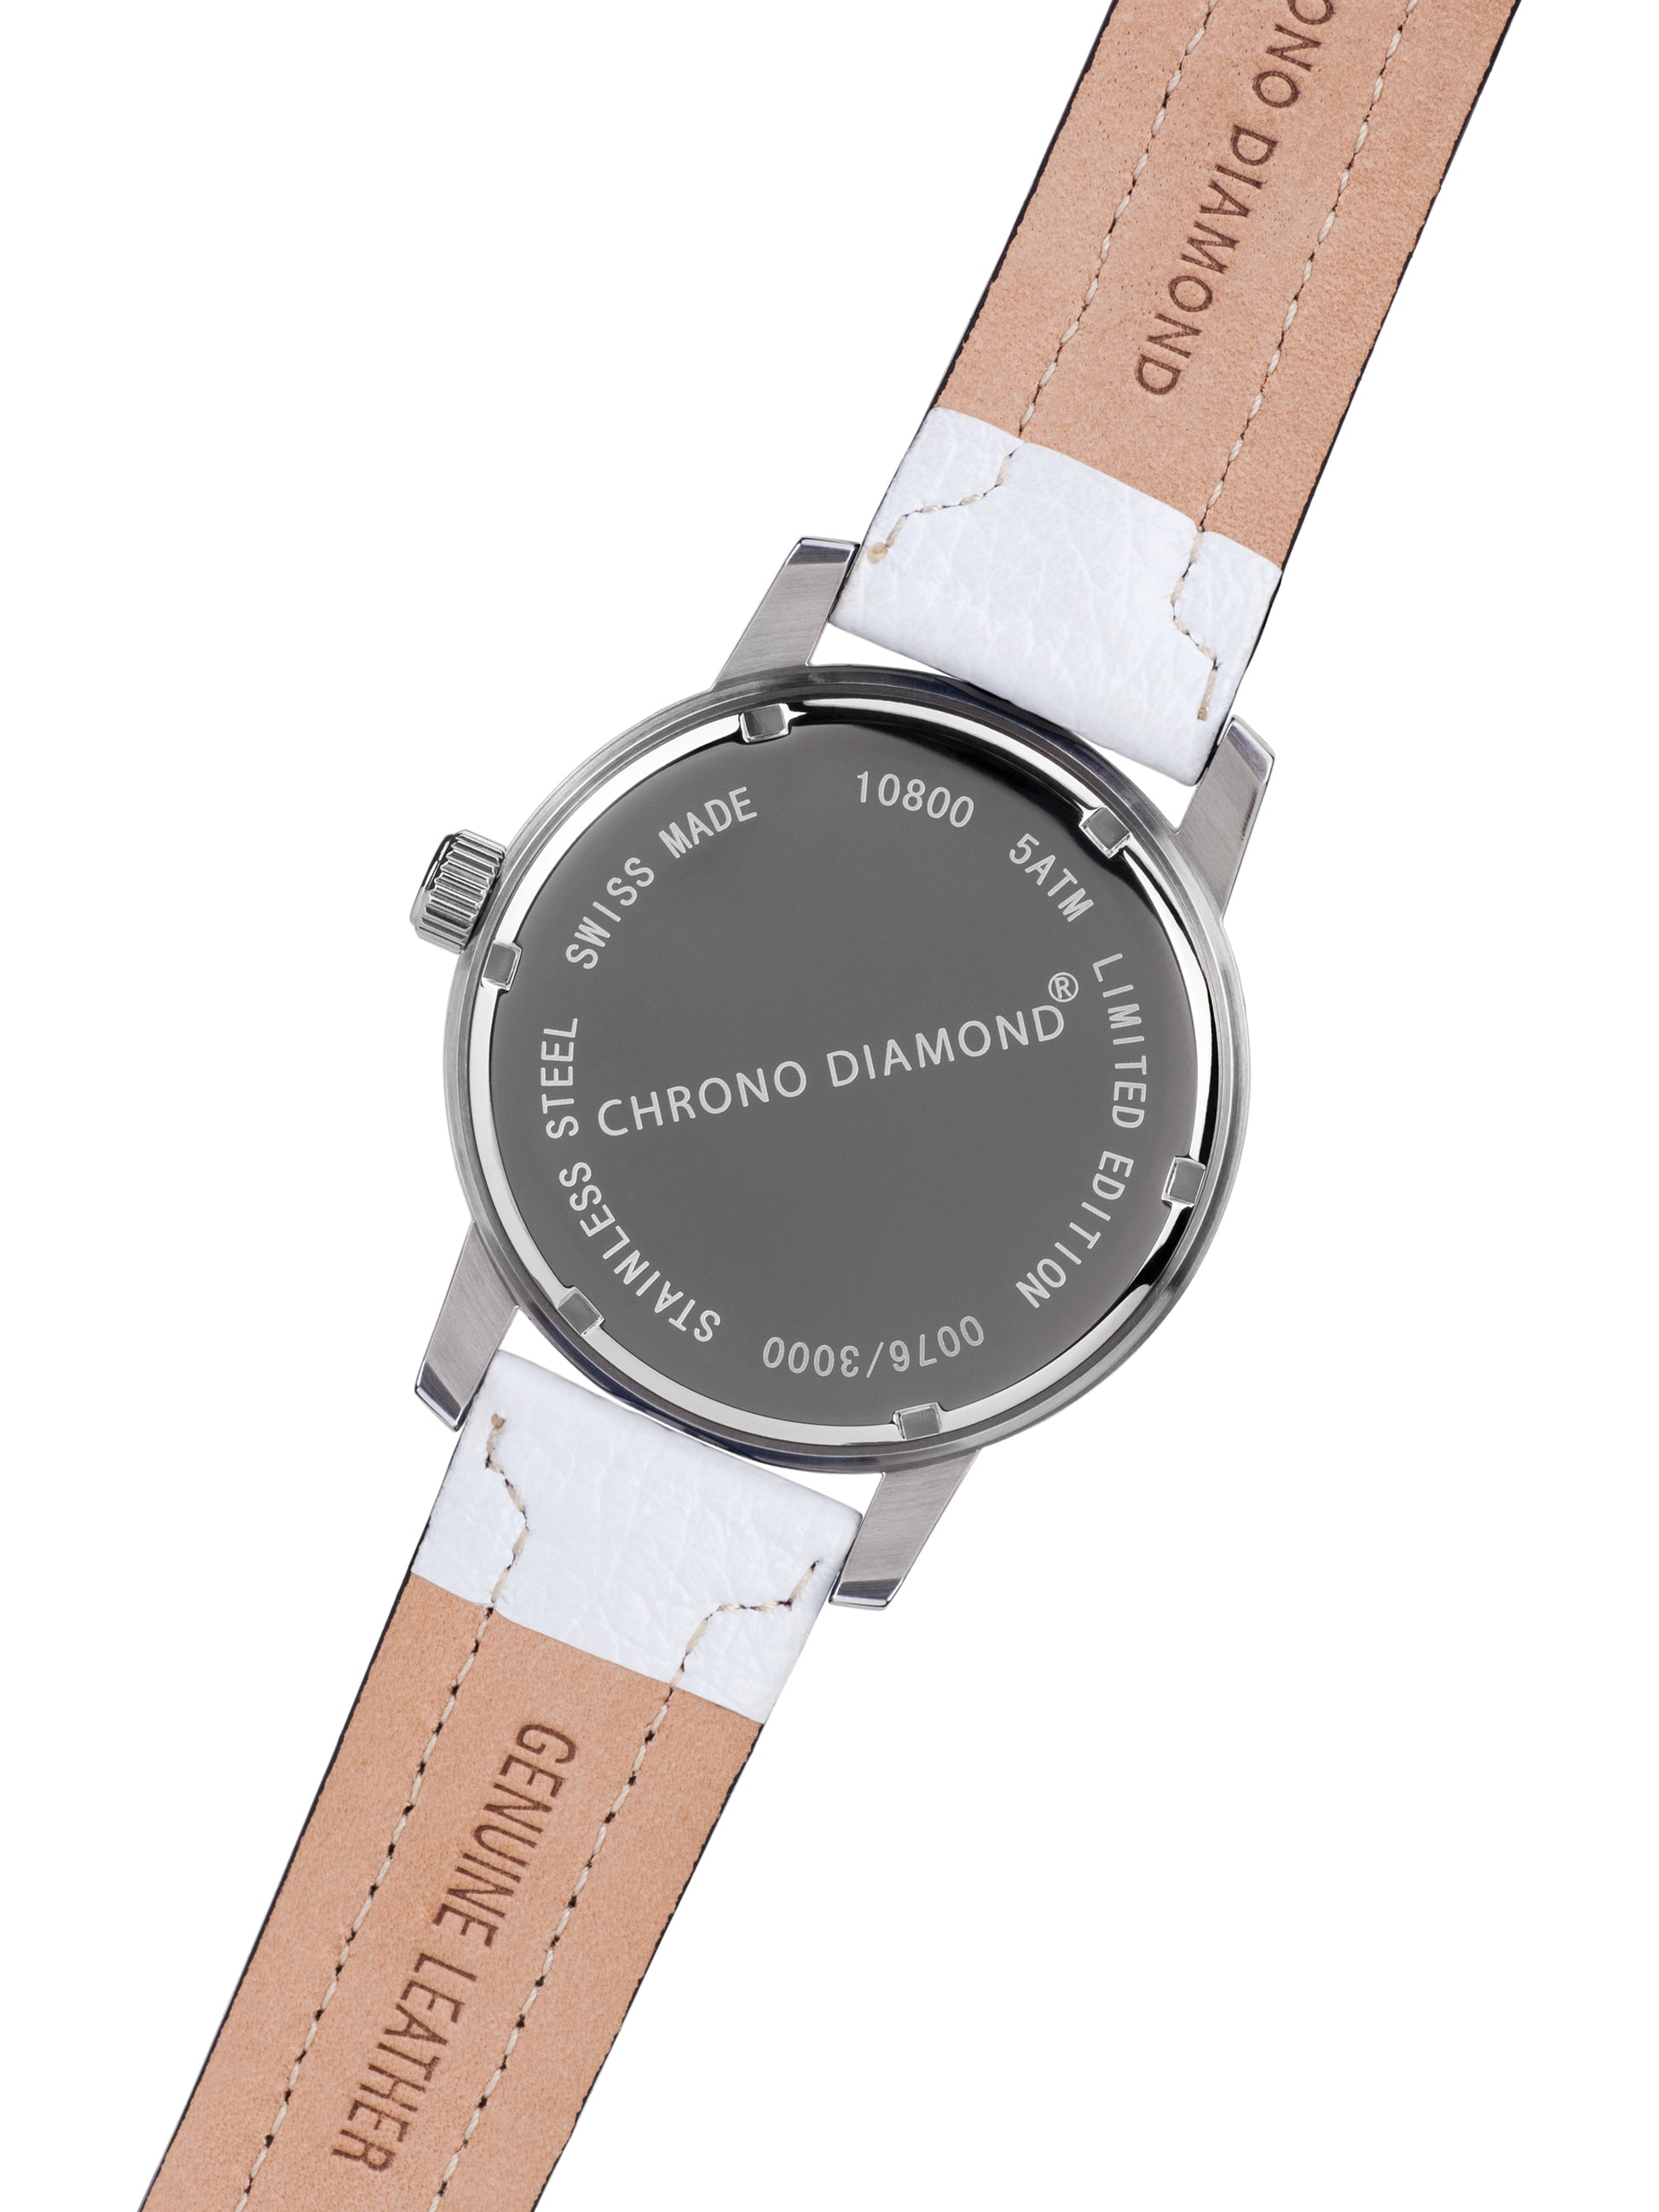 Automatic watches — Nereus — Chrono Diamond — white